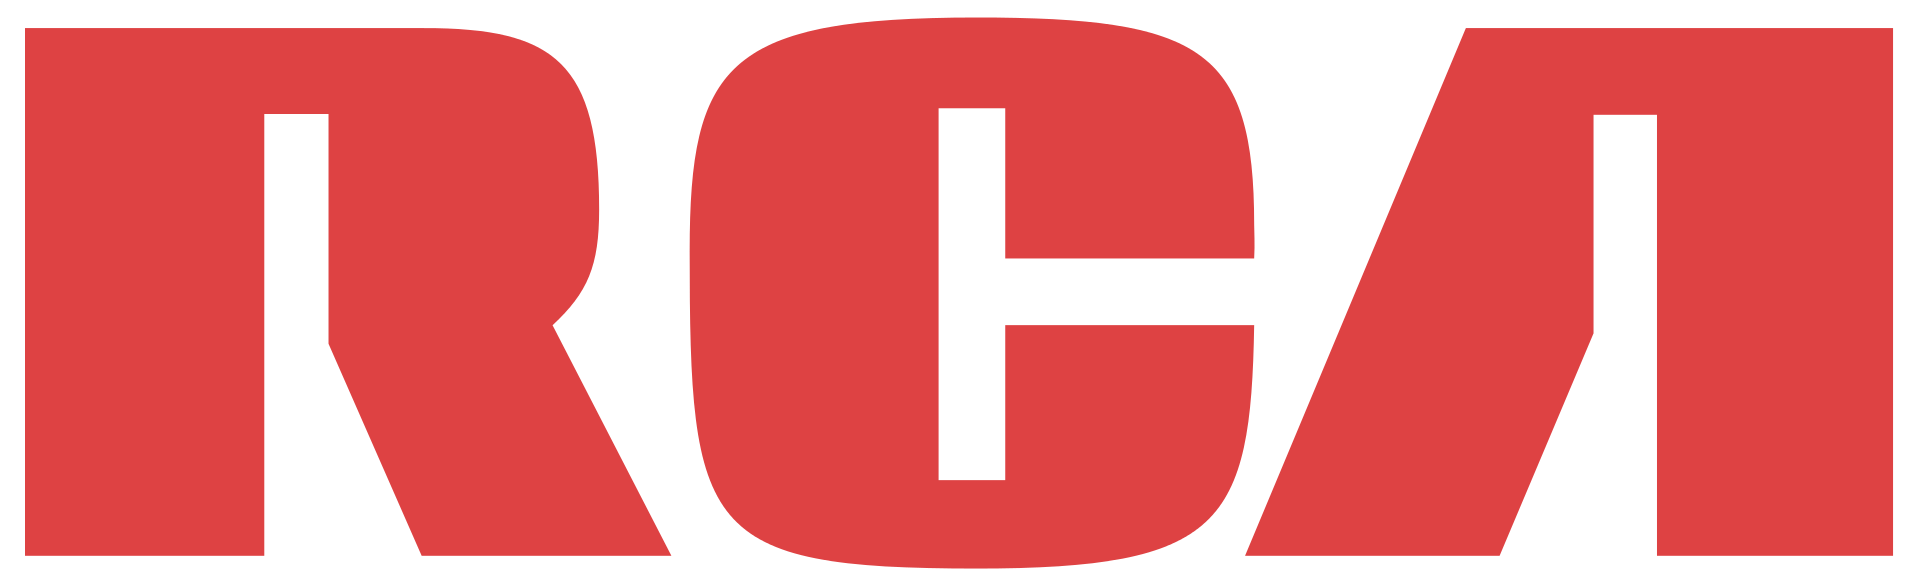 The original RCA logo. Image via Wikipedia [1].